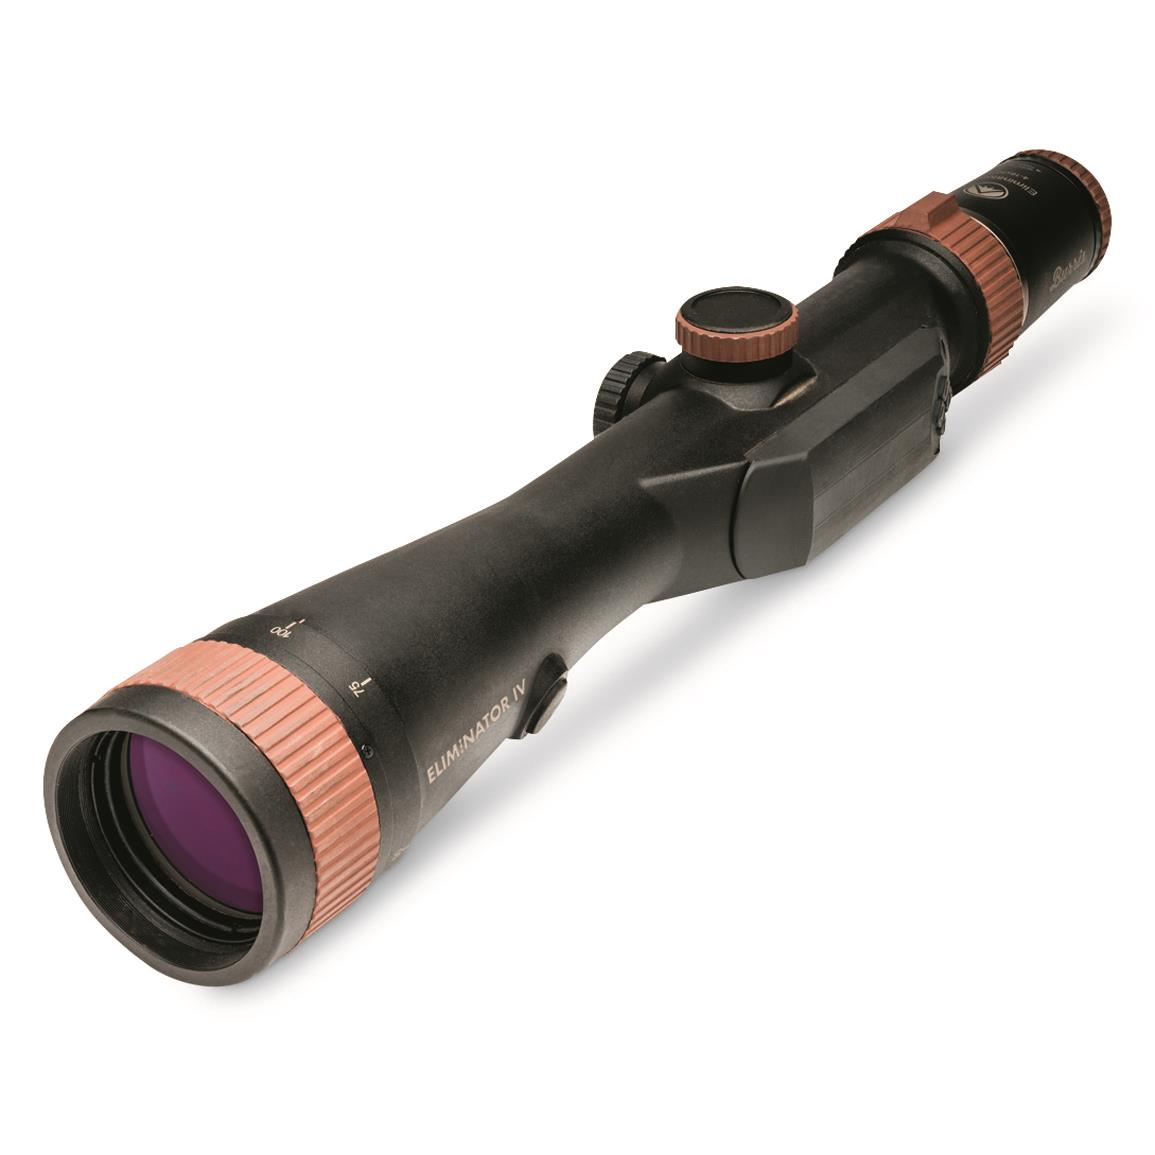 Burris Eliminator Iv Laserscope 4 16x50mm Rifle Scope Illuminated X96